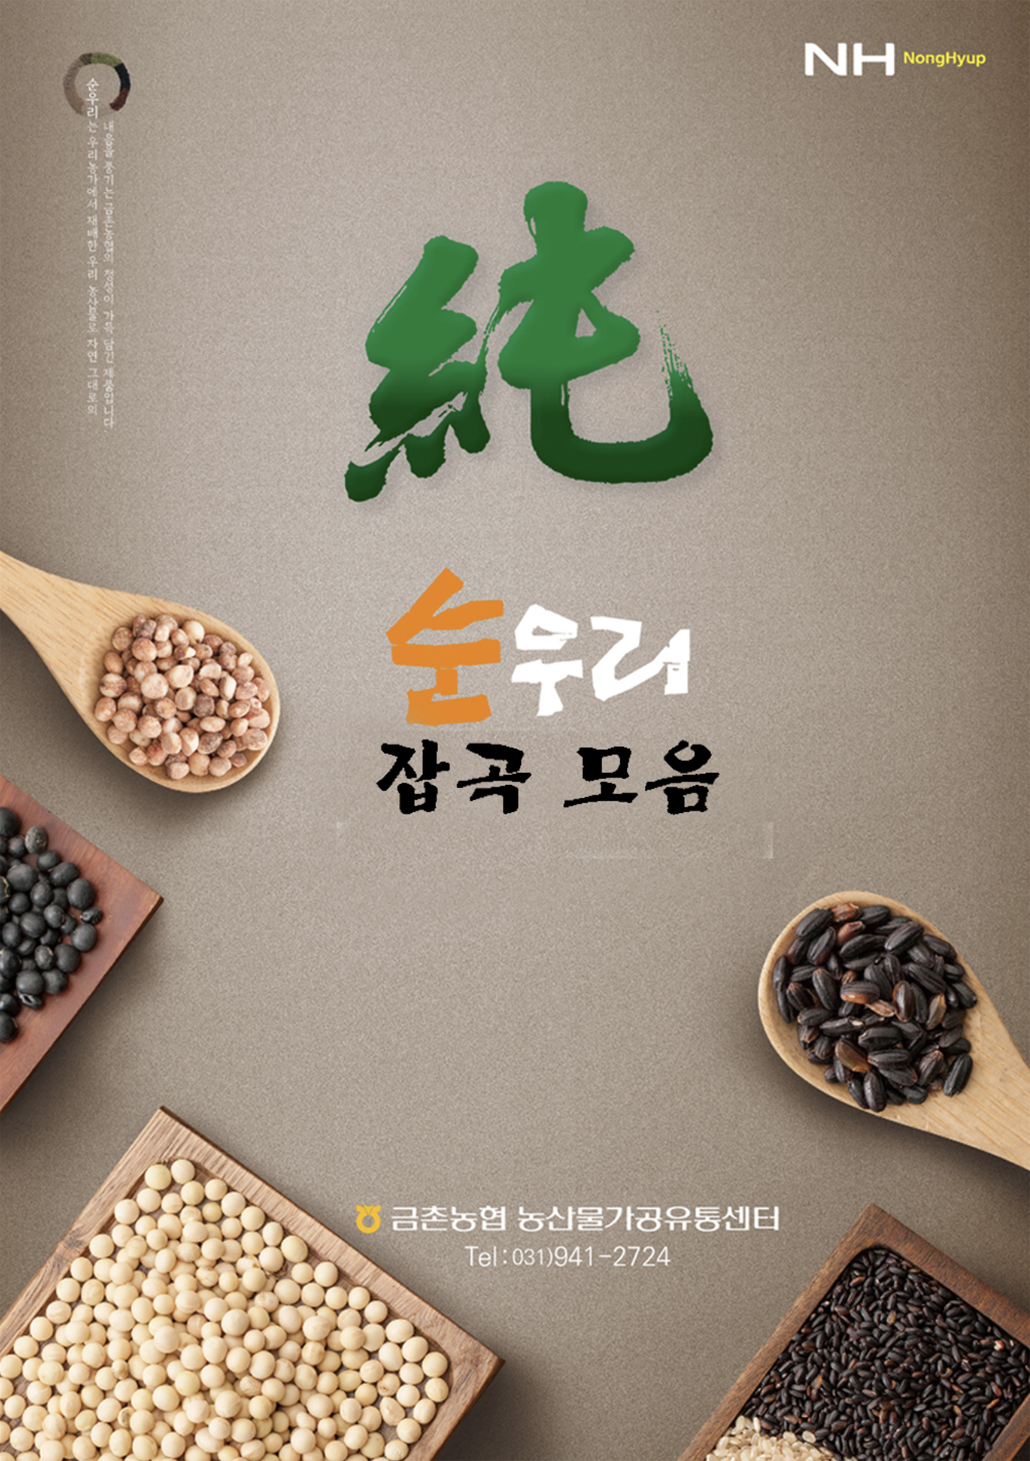 韓國食品-[GeumCheonNH] Soonwoori Glutinous Brown Rice 1kg